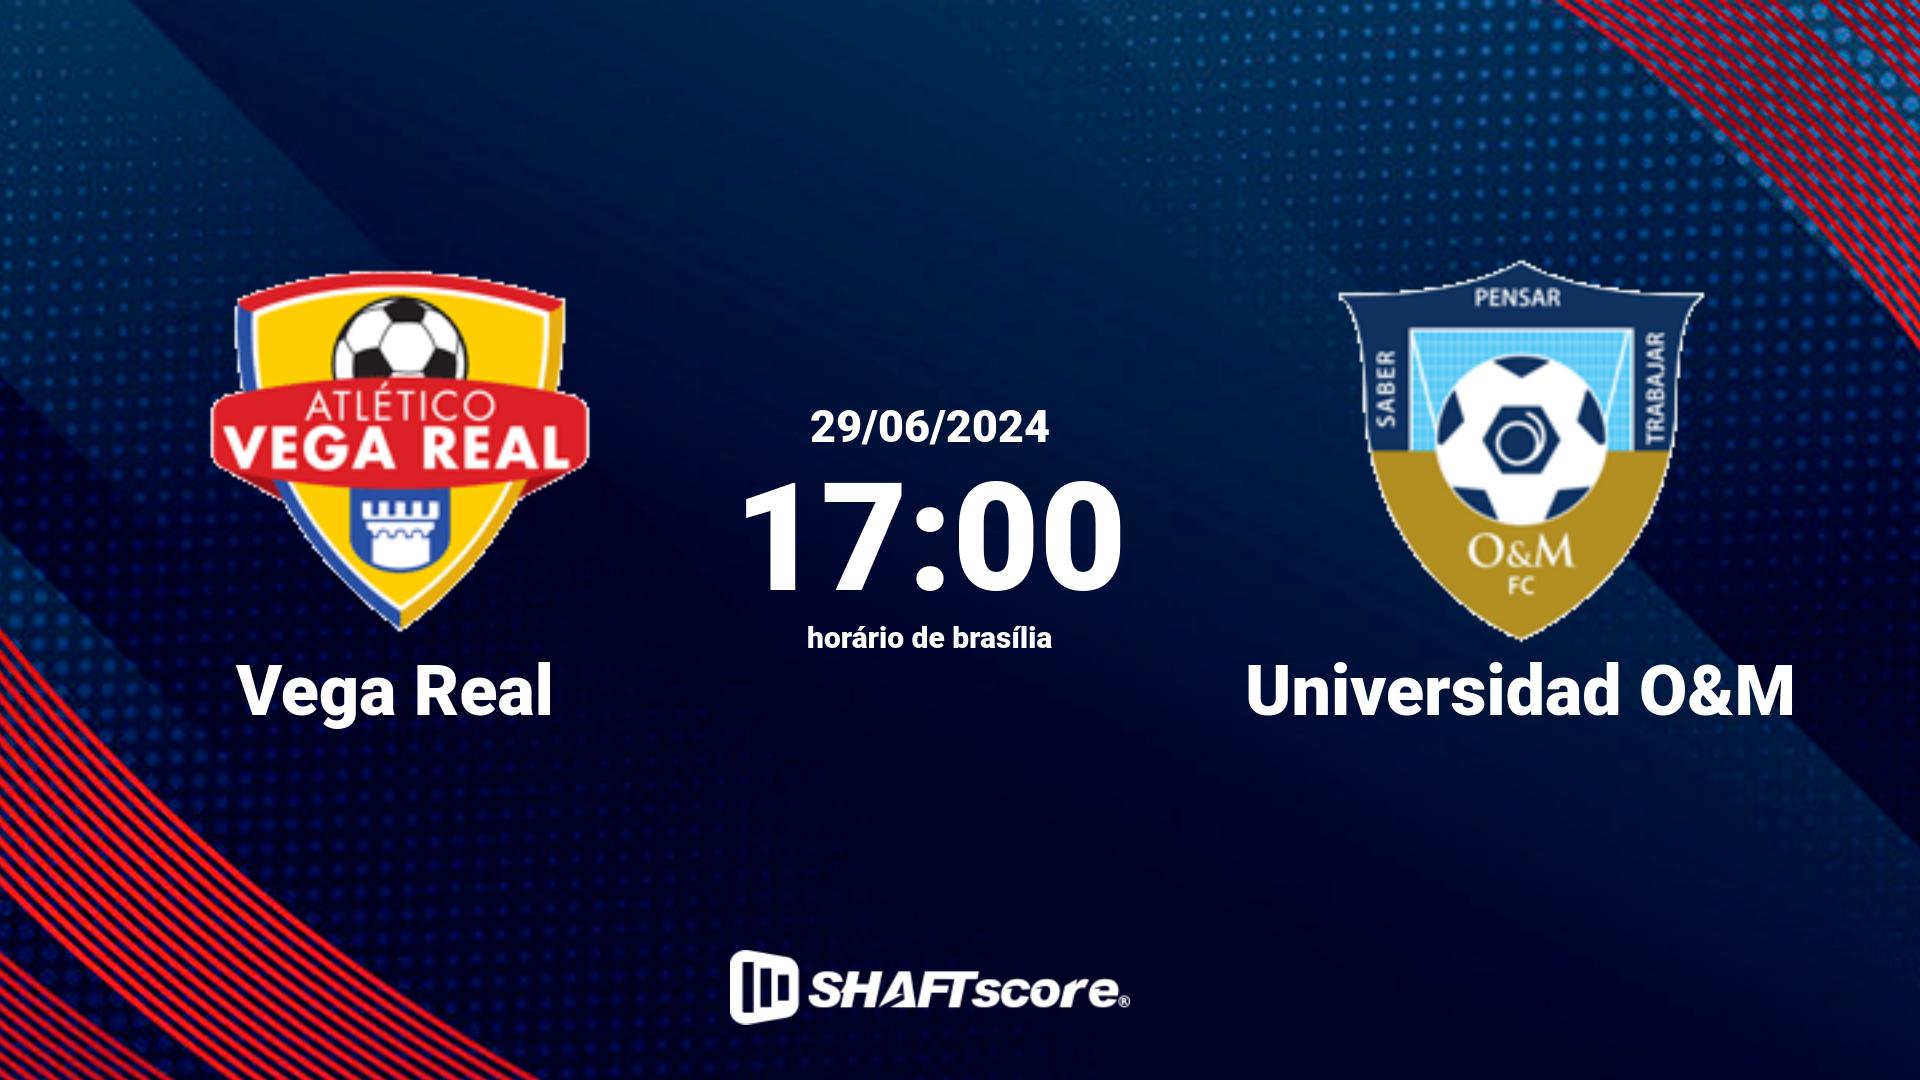 Estatísticas do jogo Vega Real vs Universidad O&M 29.06 17:00